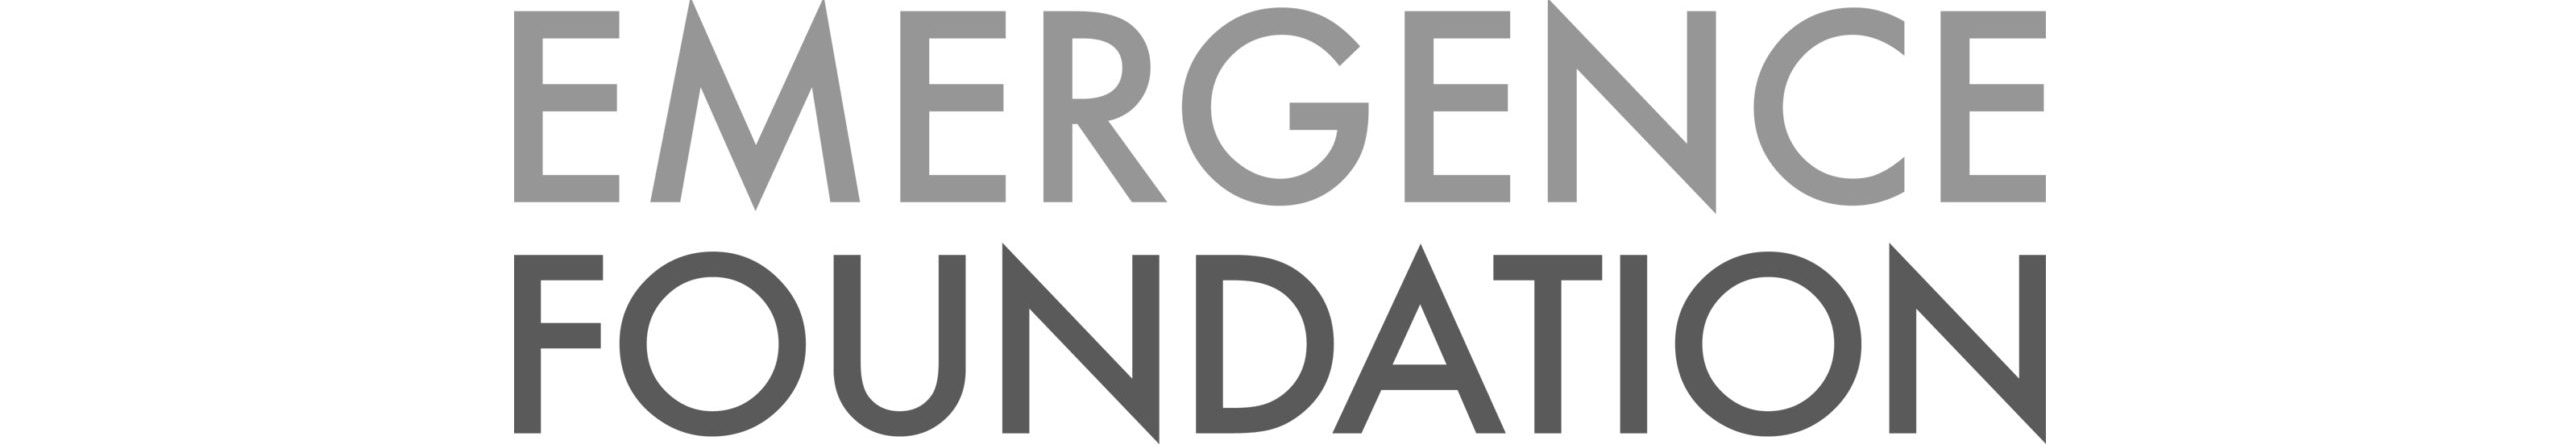 Emergence Foundation